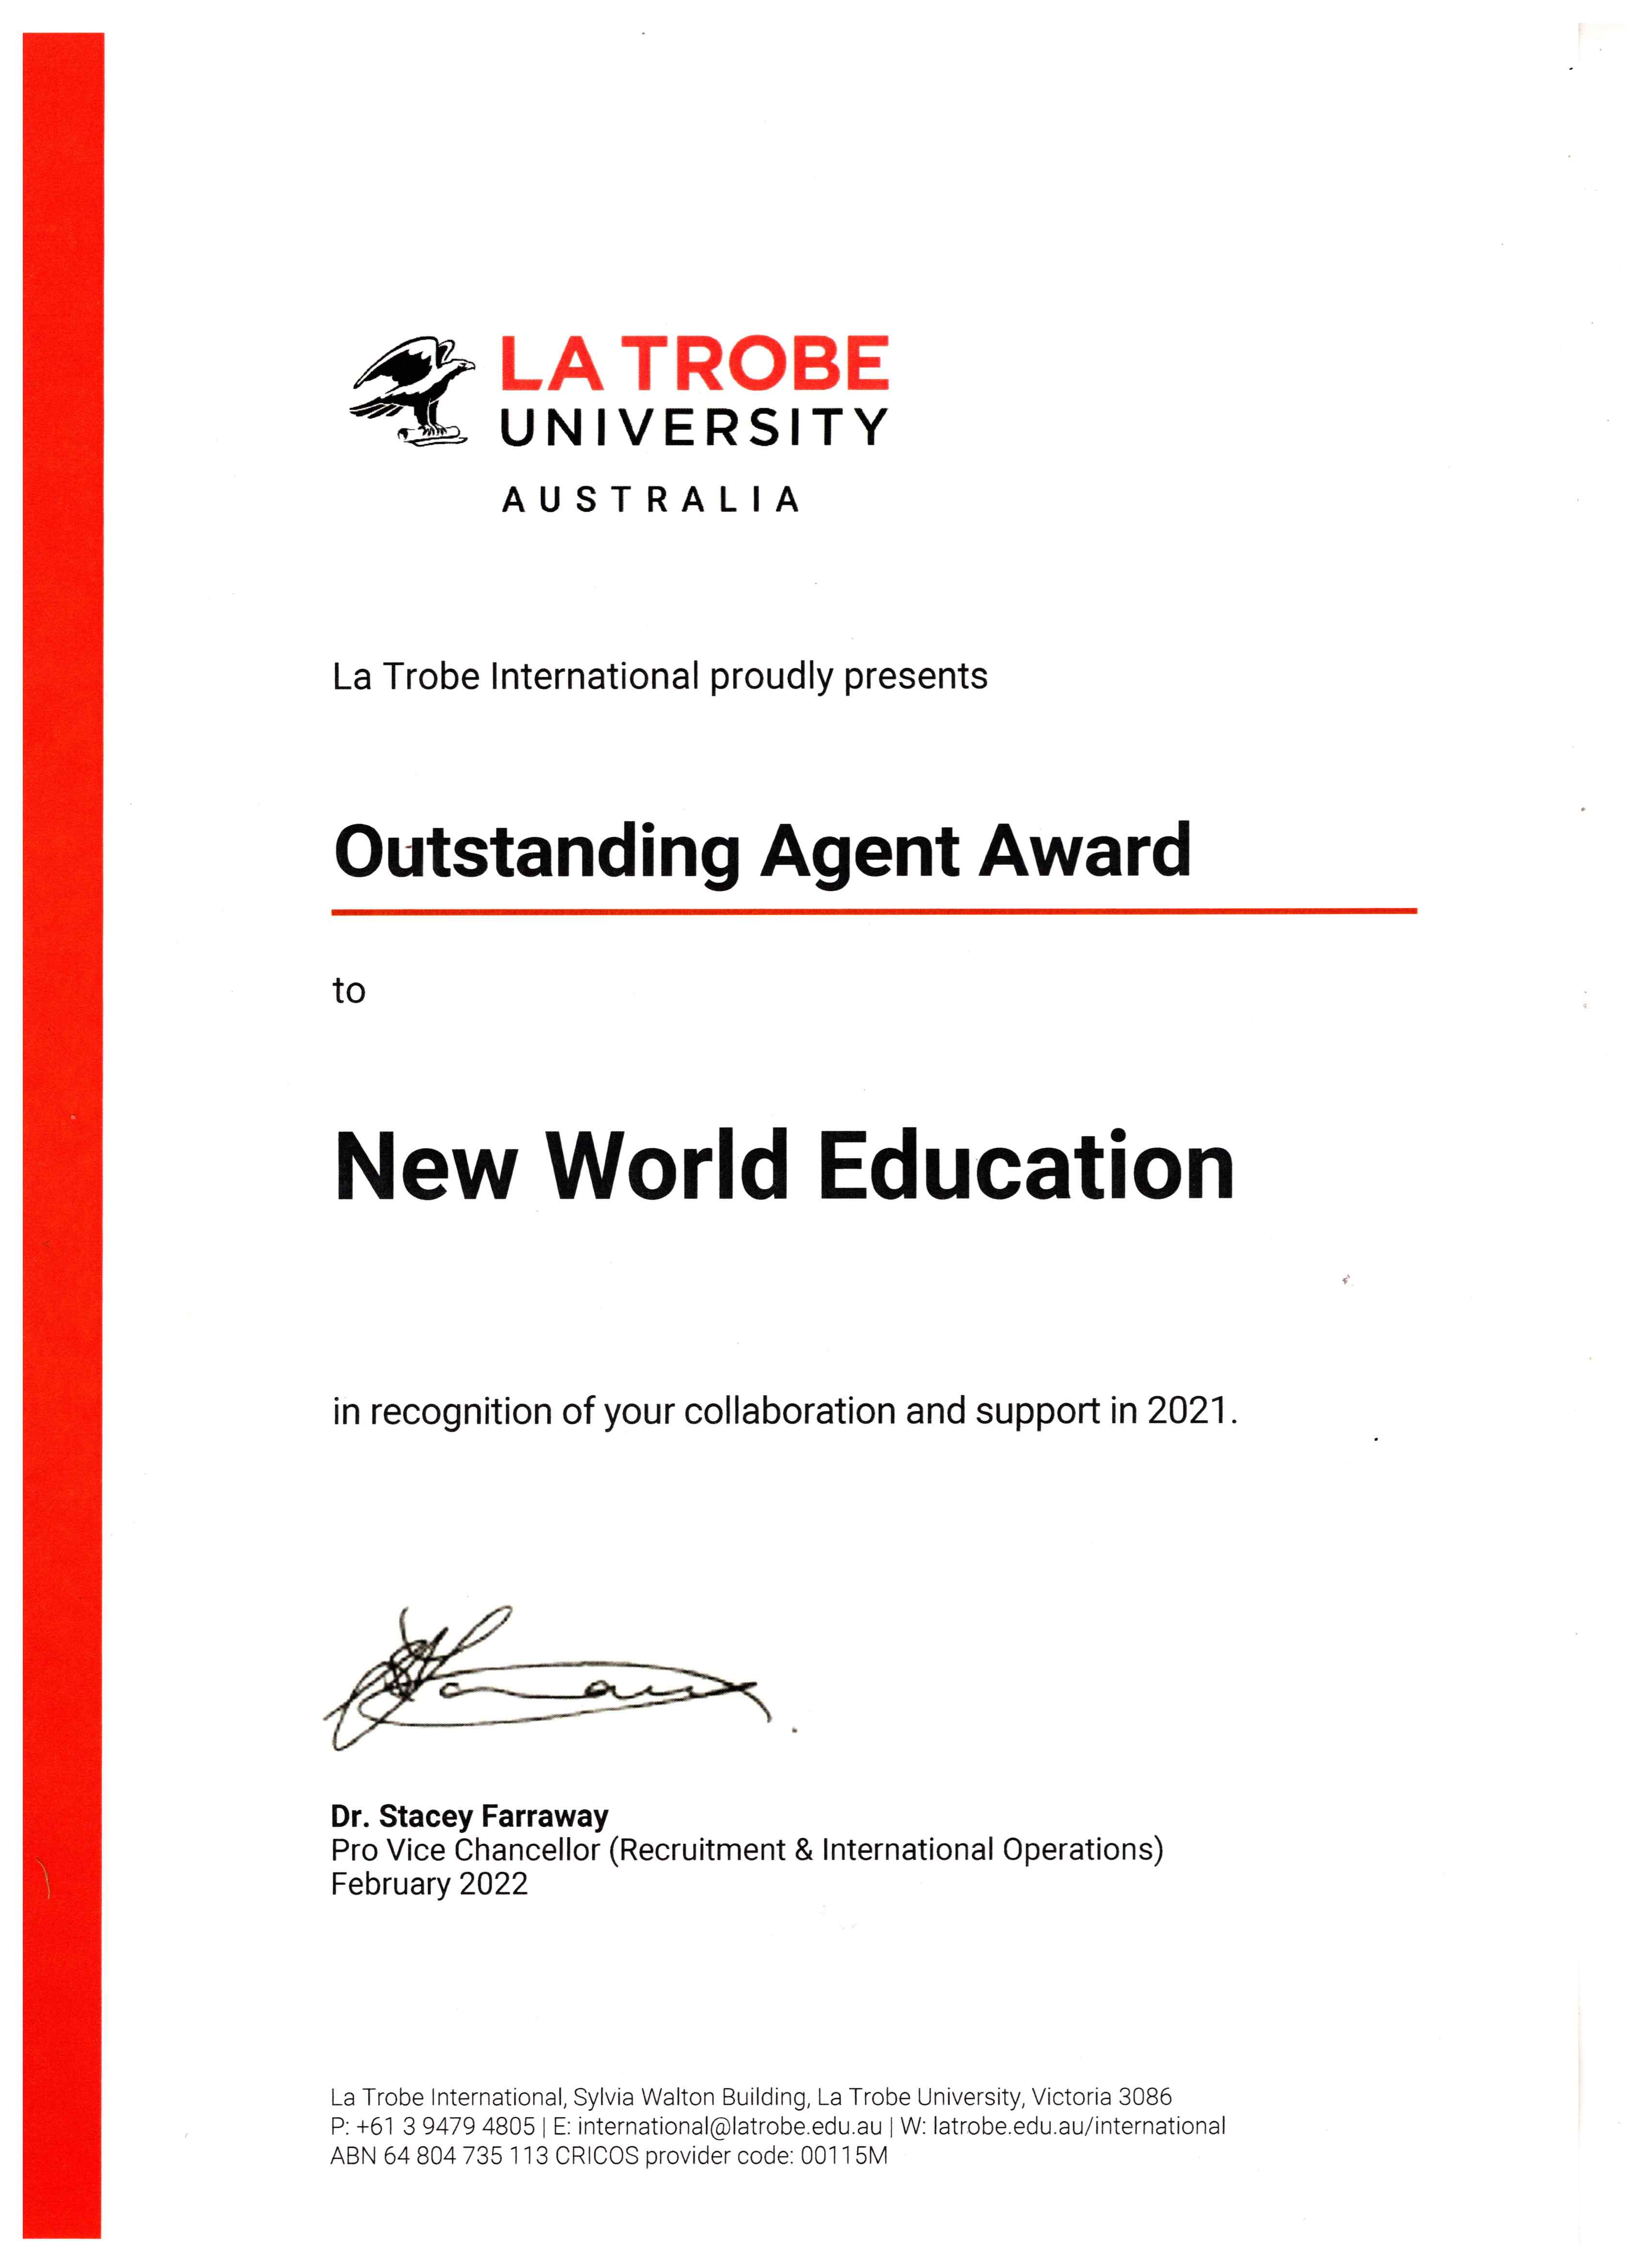 Agent Outstanding Award 2021 từ La Trobe University, Úc